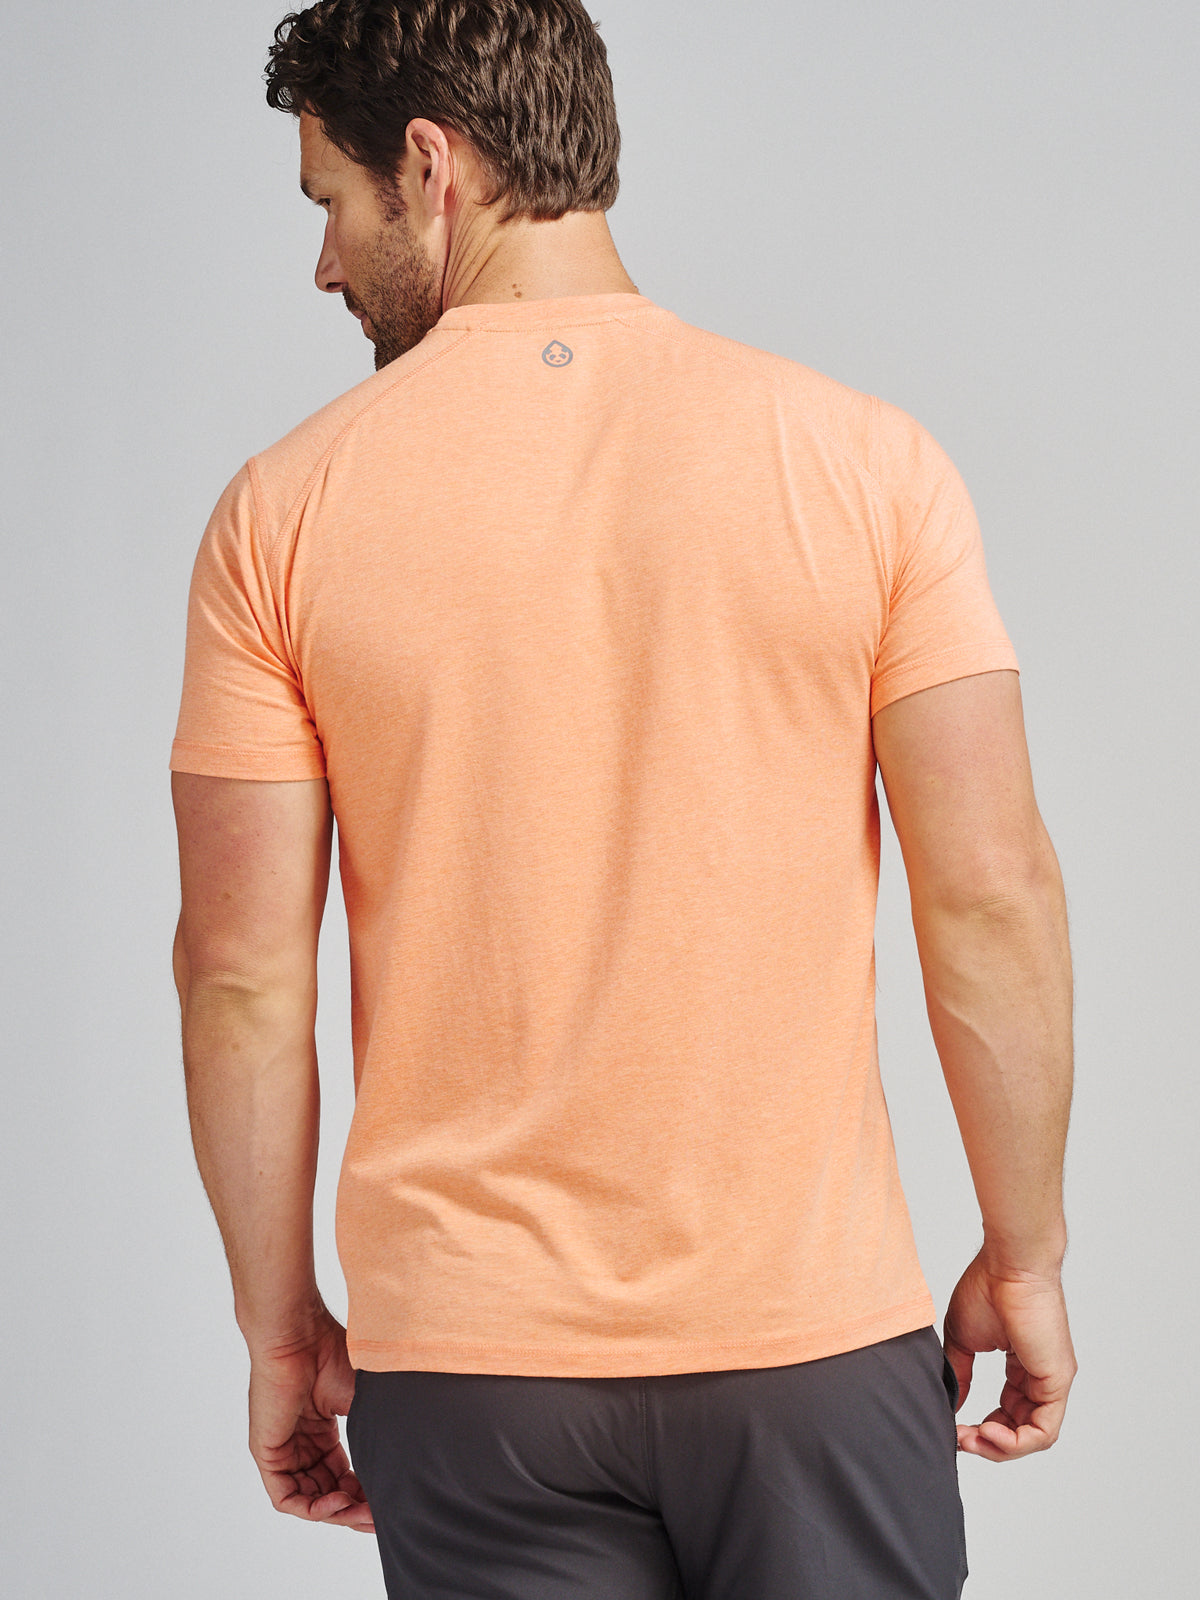 Carrollton Fitness T-Shirt - Seasonal (ApricotCrushHeather)